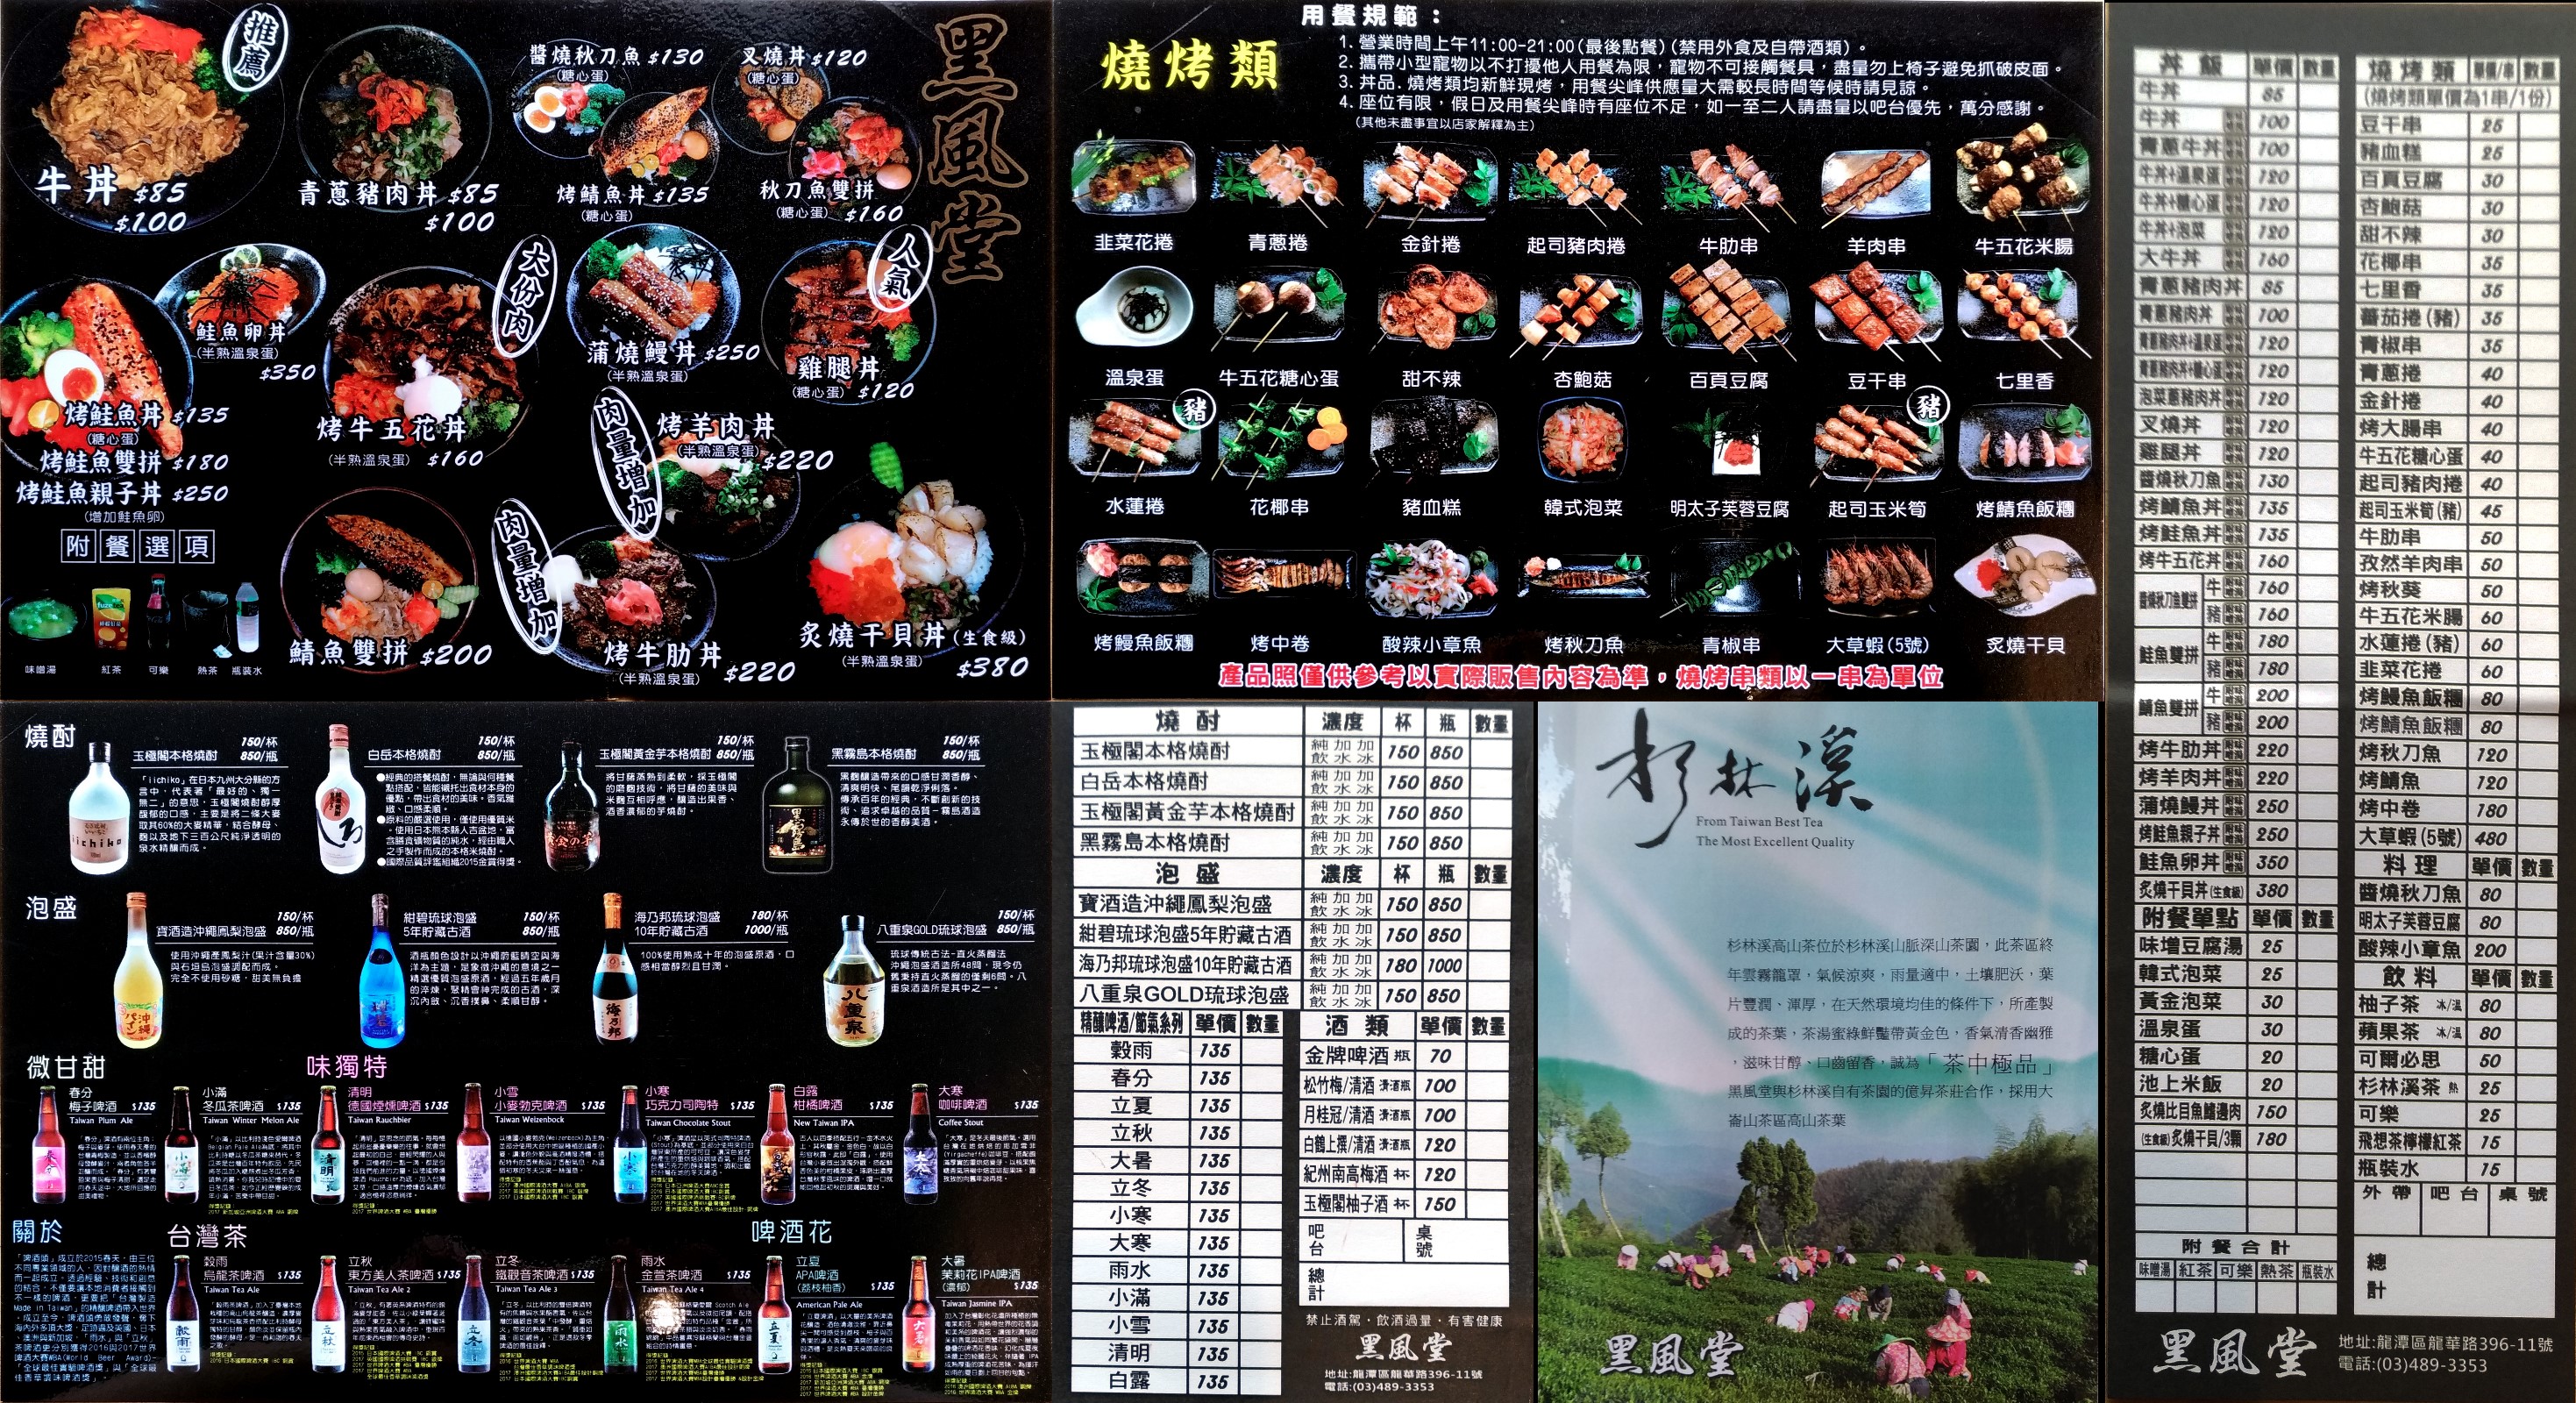 黑風堂 menu 2018.09.19